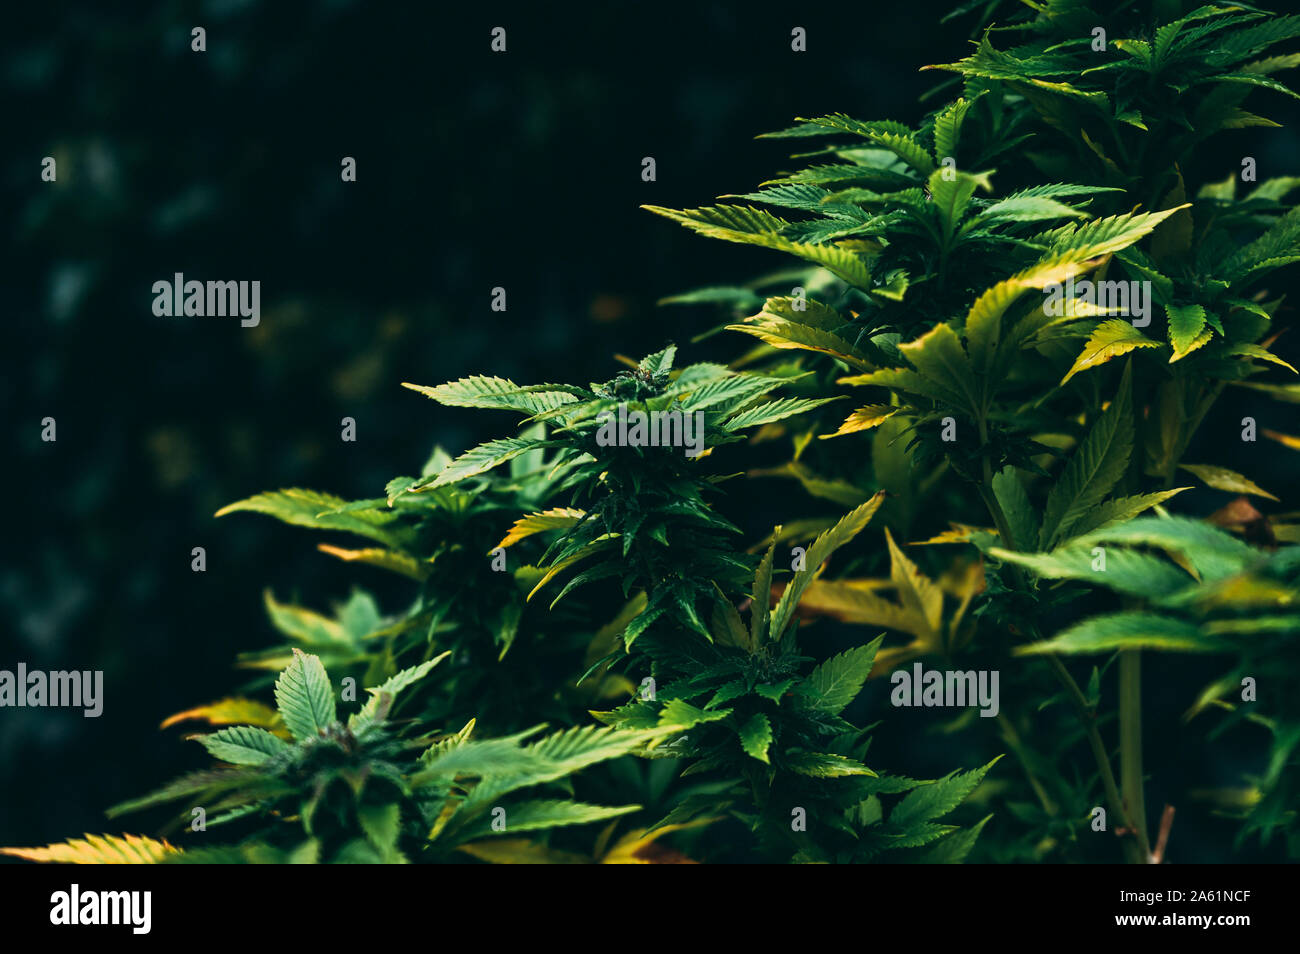 Gorilla glue cannabis strain blooms on dark natural background Stock Photo